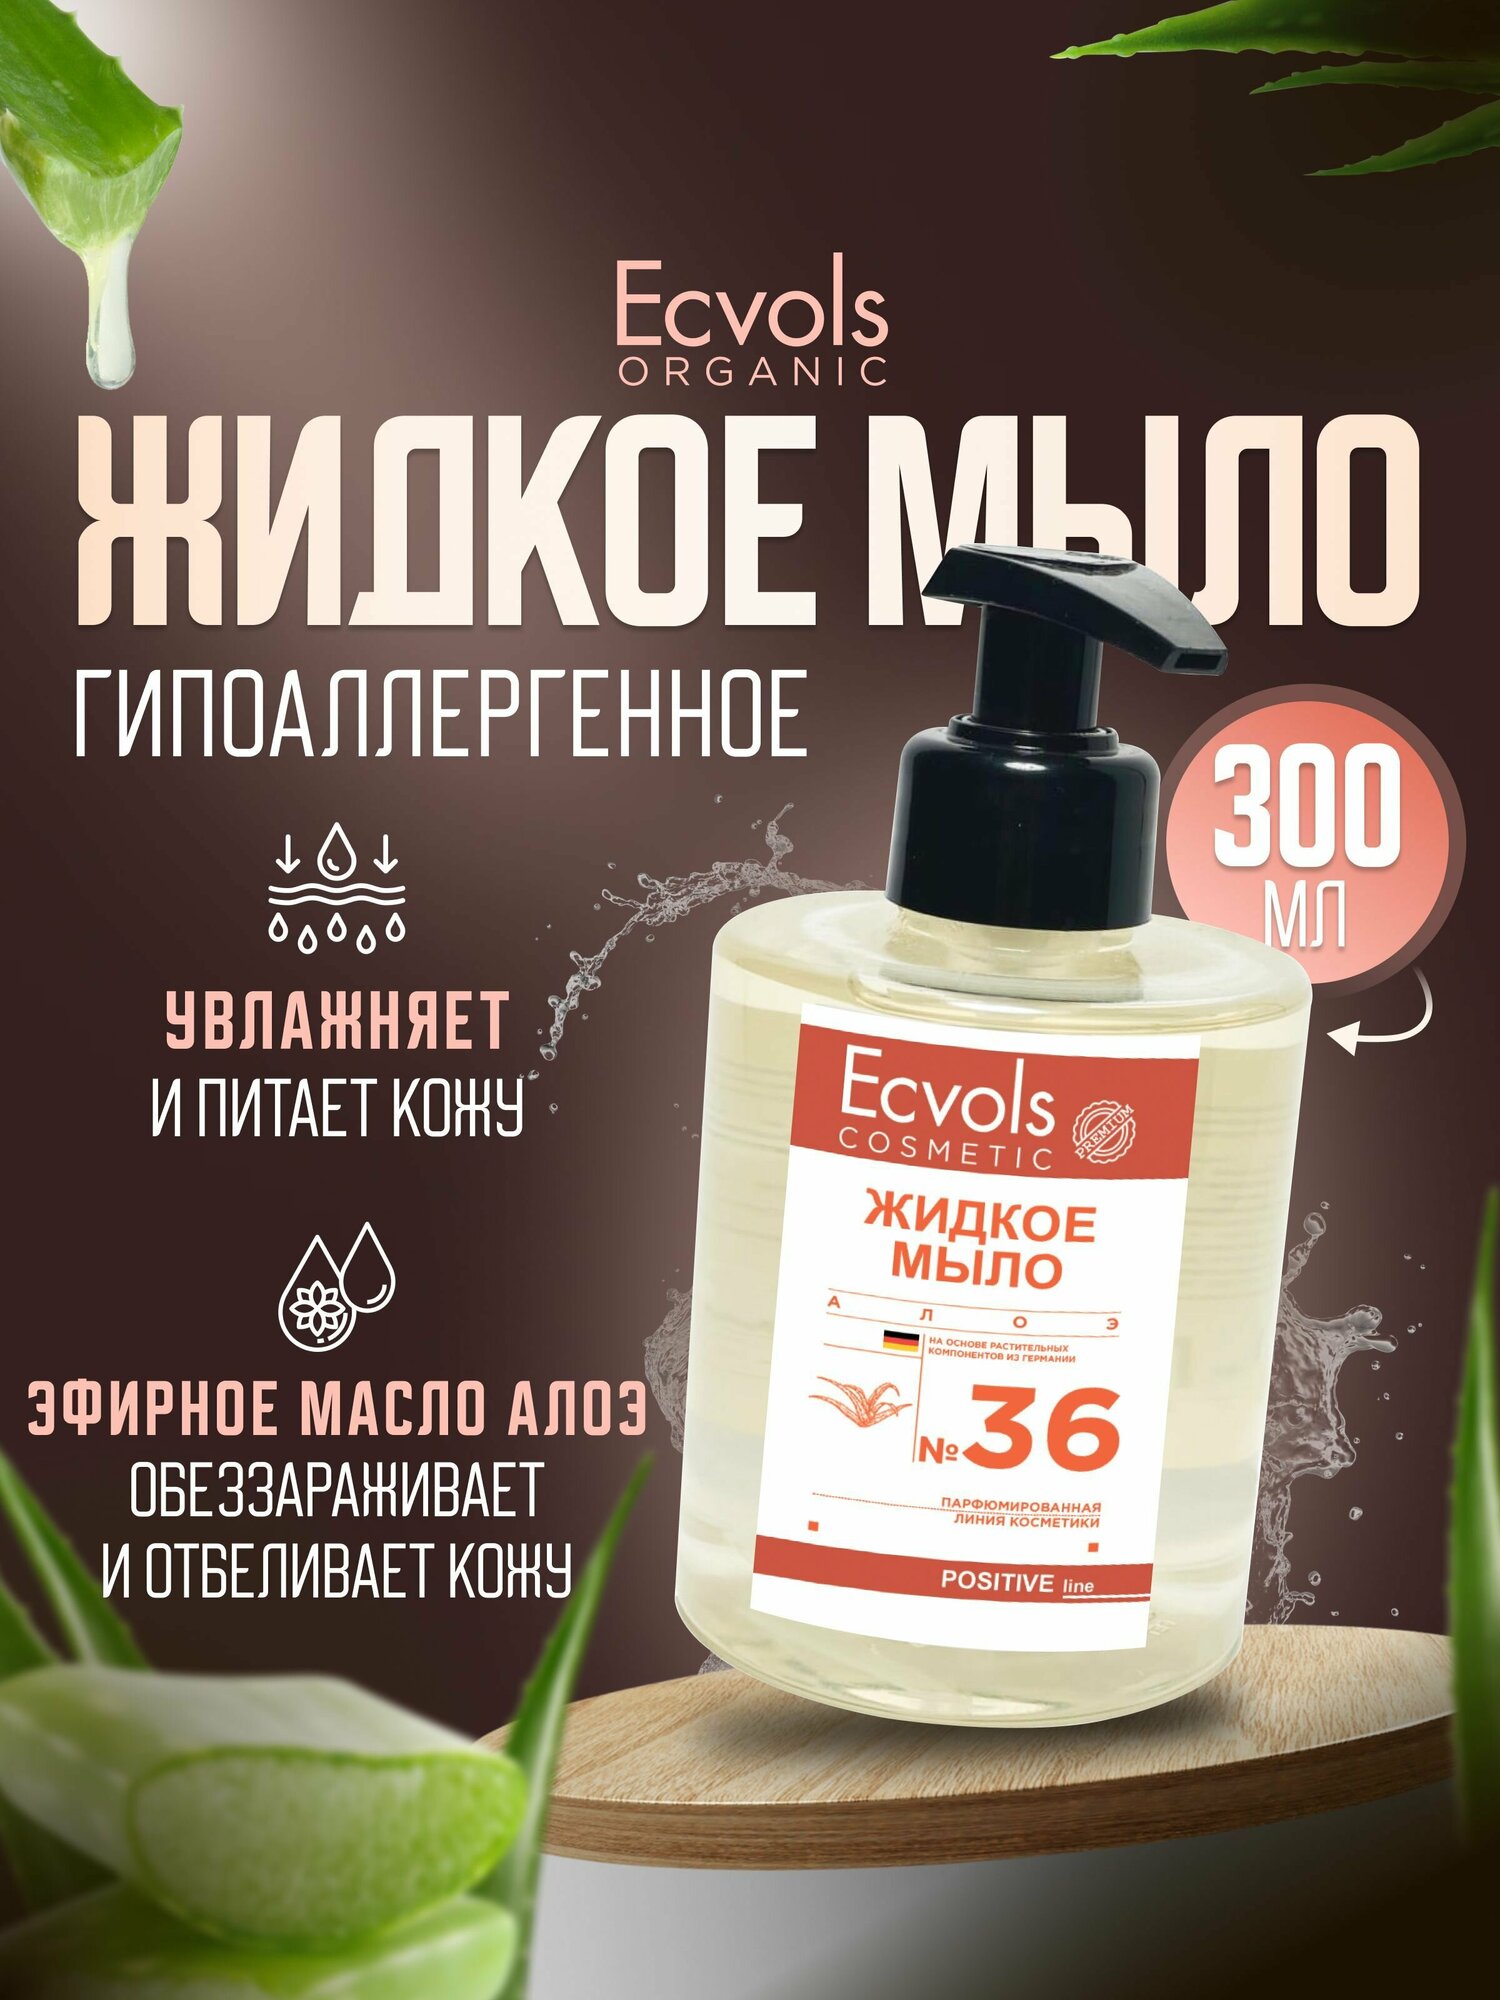 Жидкое мыло для рук и тела Ecvols Organic "Алое-вера" увлажняющее, натуральное, с дозатором, 300 мл